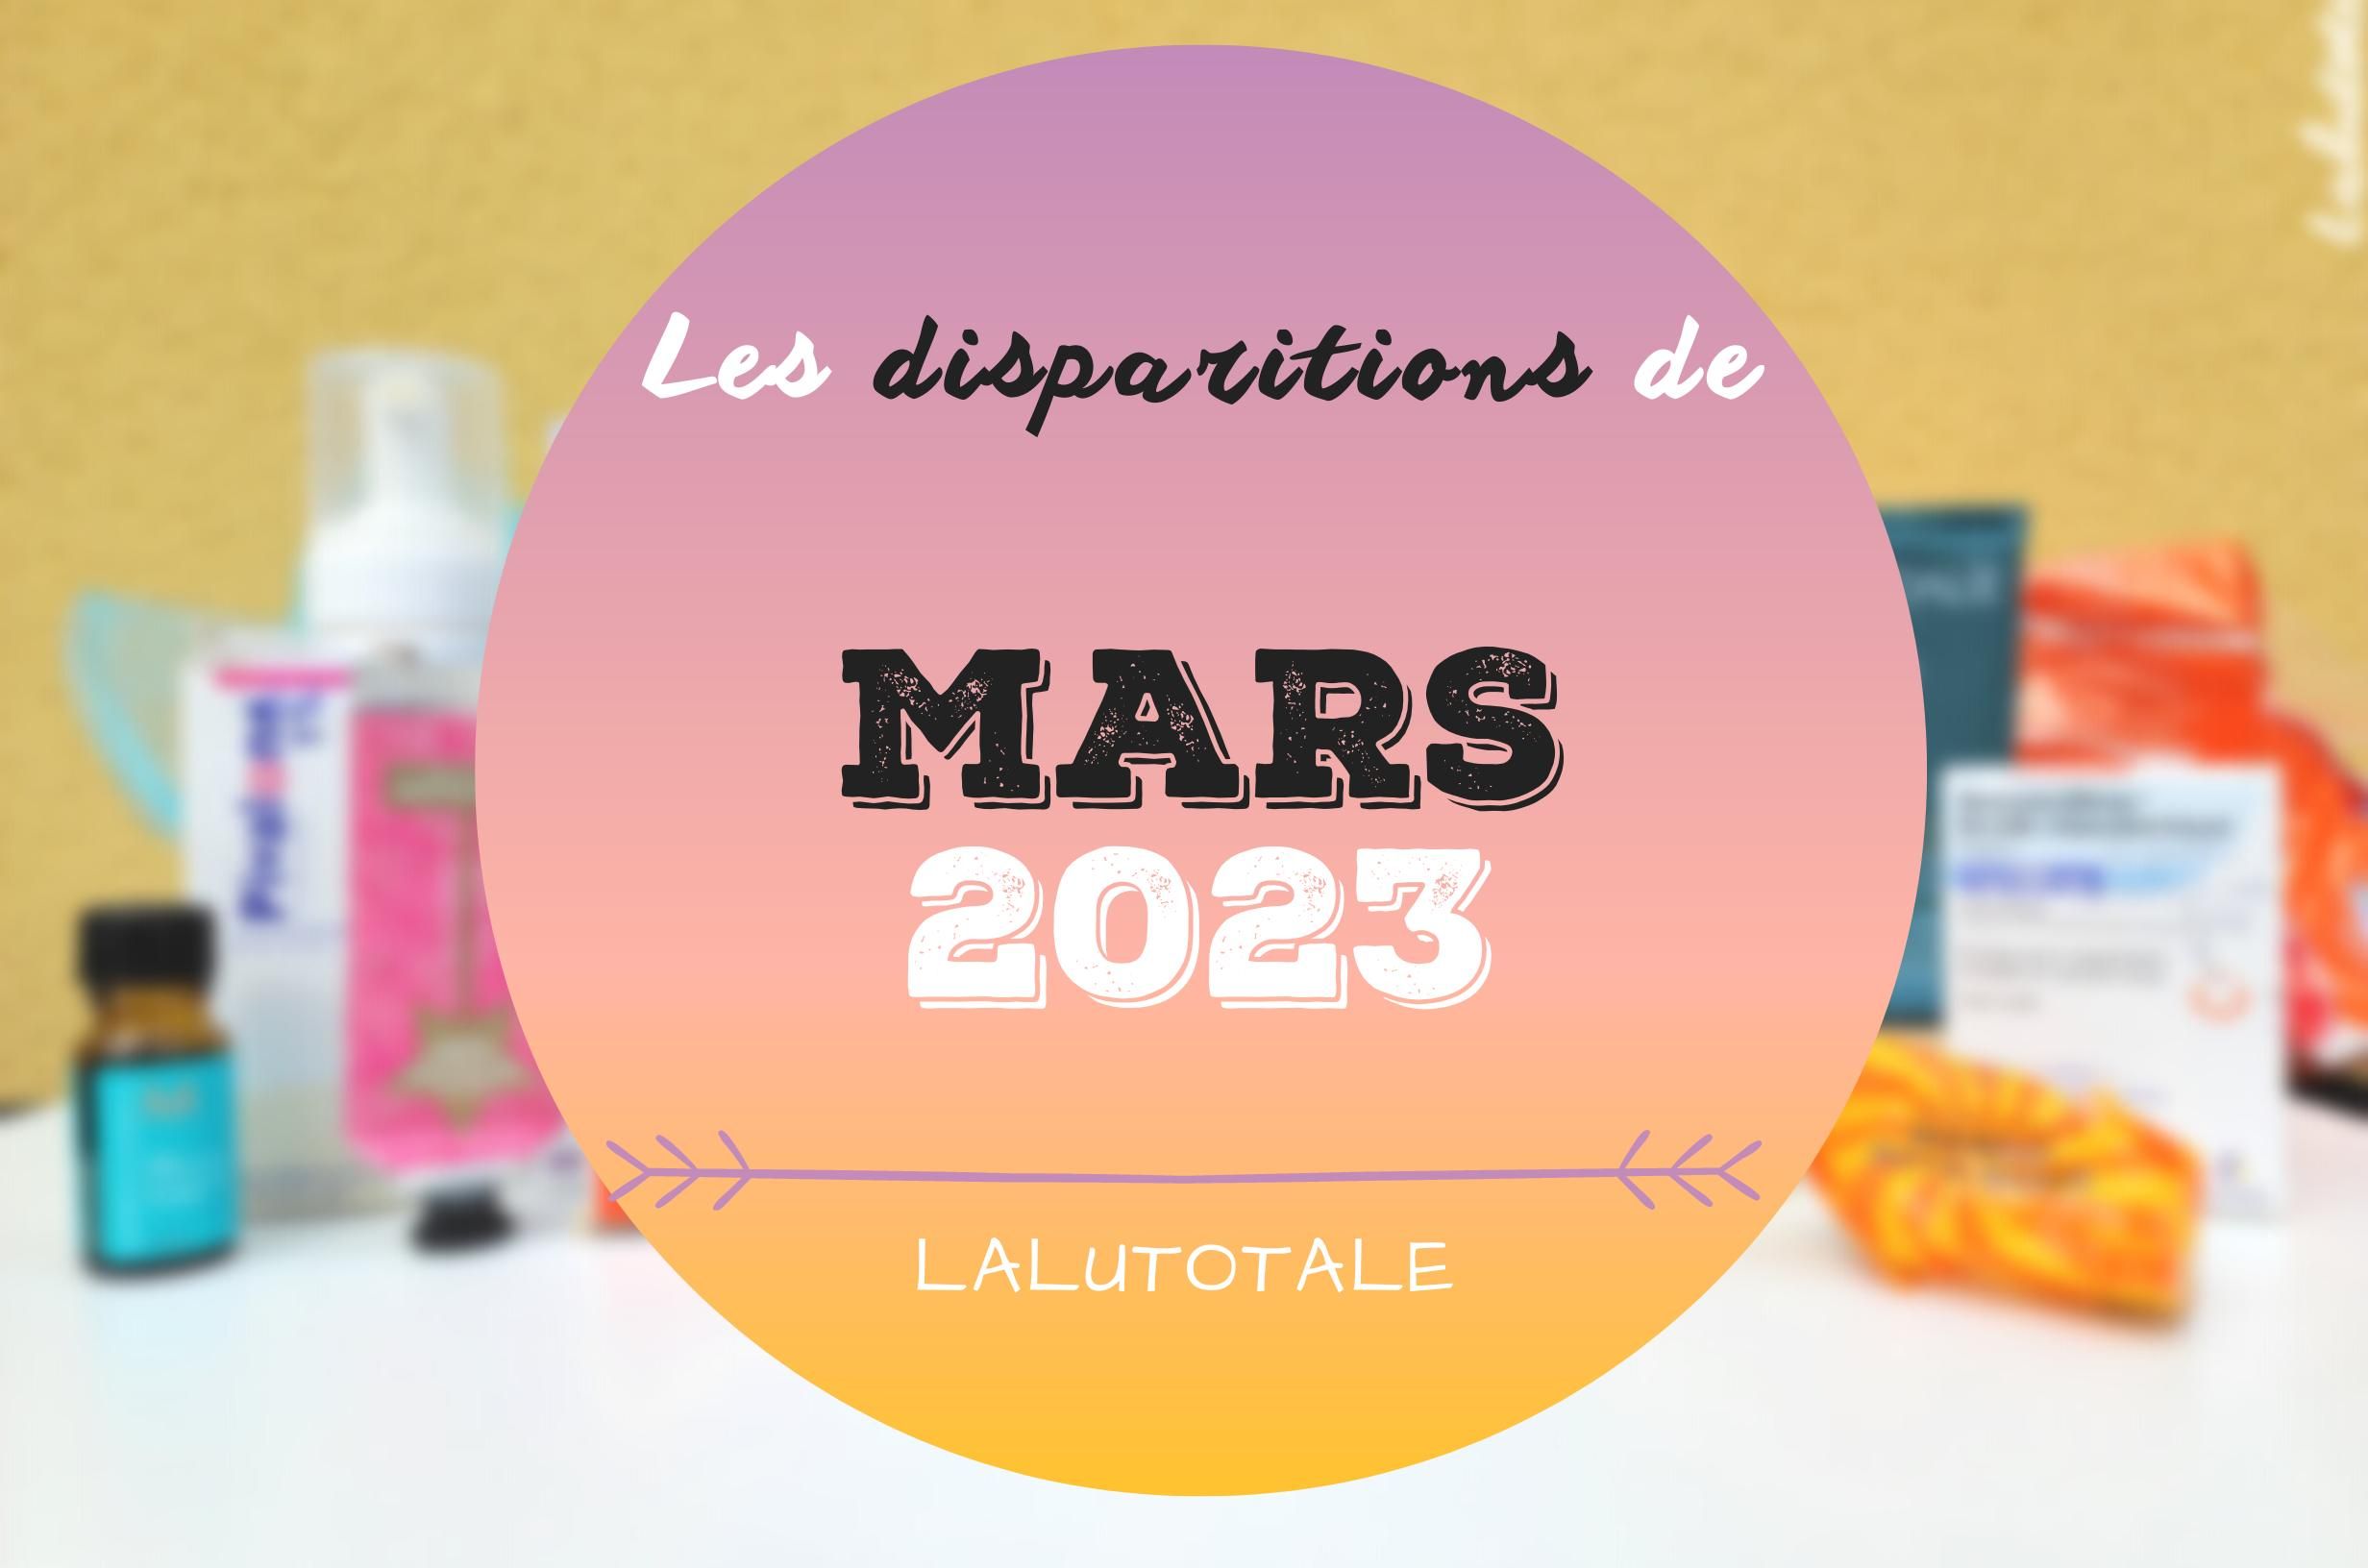 ✞ Les disparitions dans ma salle de bains en Mars 2023 ✞